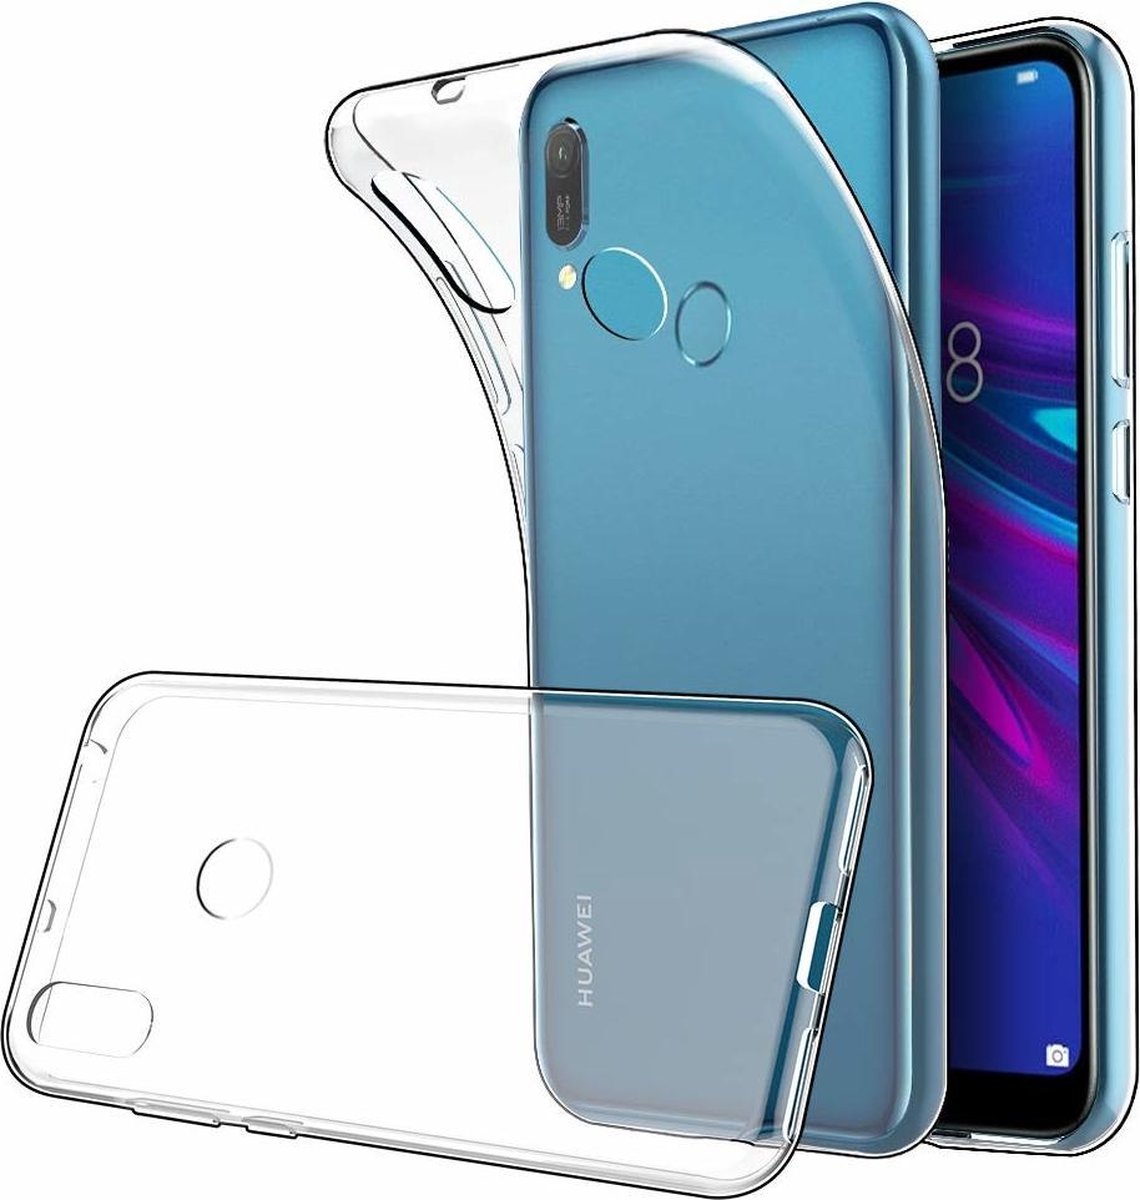 Huawei Y6 2019 Transparant Hoesje / Crystal Clear TPU Case - van Bixb